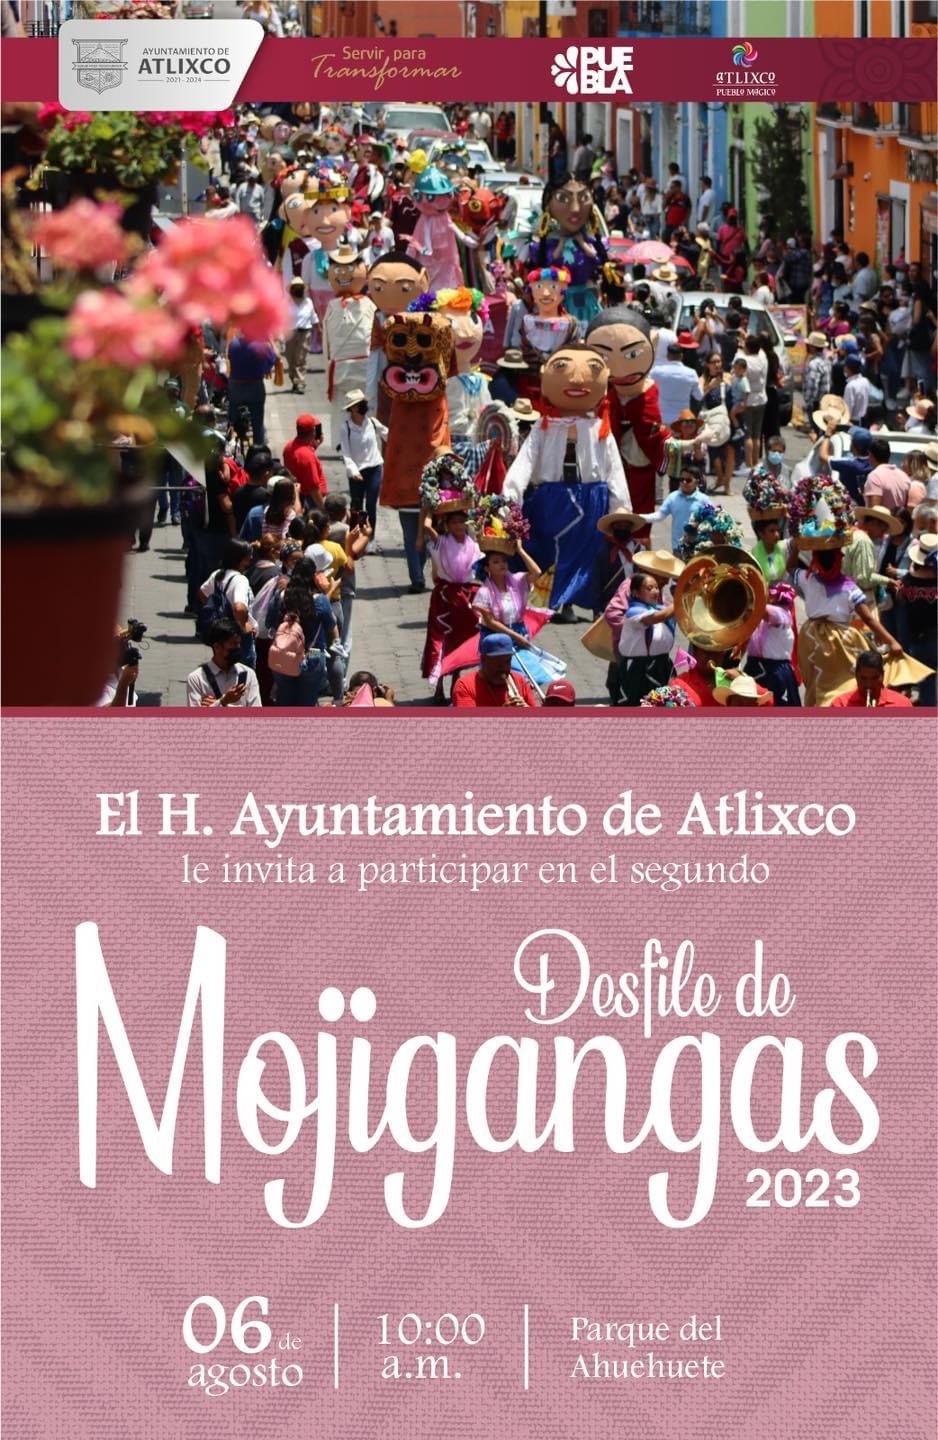 ¡Todo listo para el desfile de mojigangas en Atlixco!: Ariadna Ayala